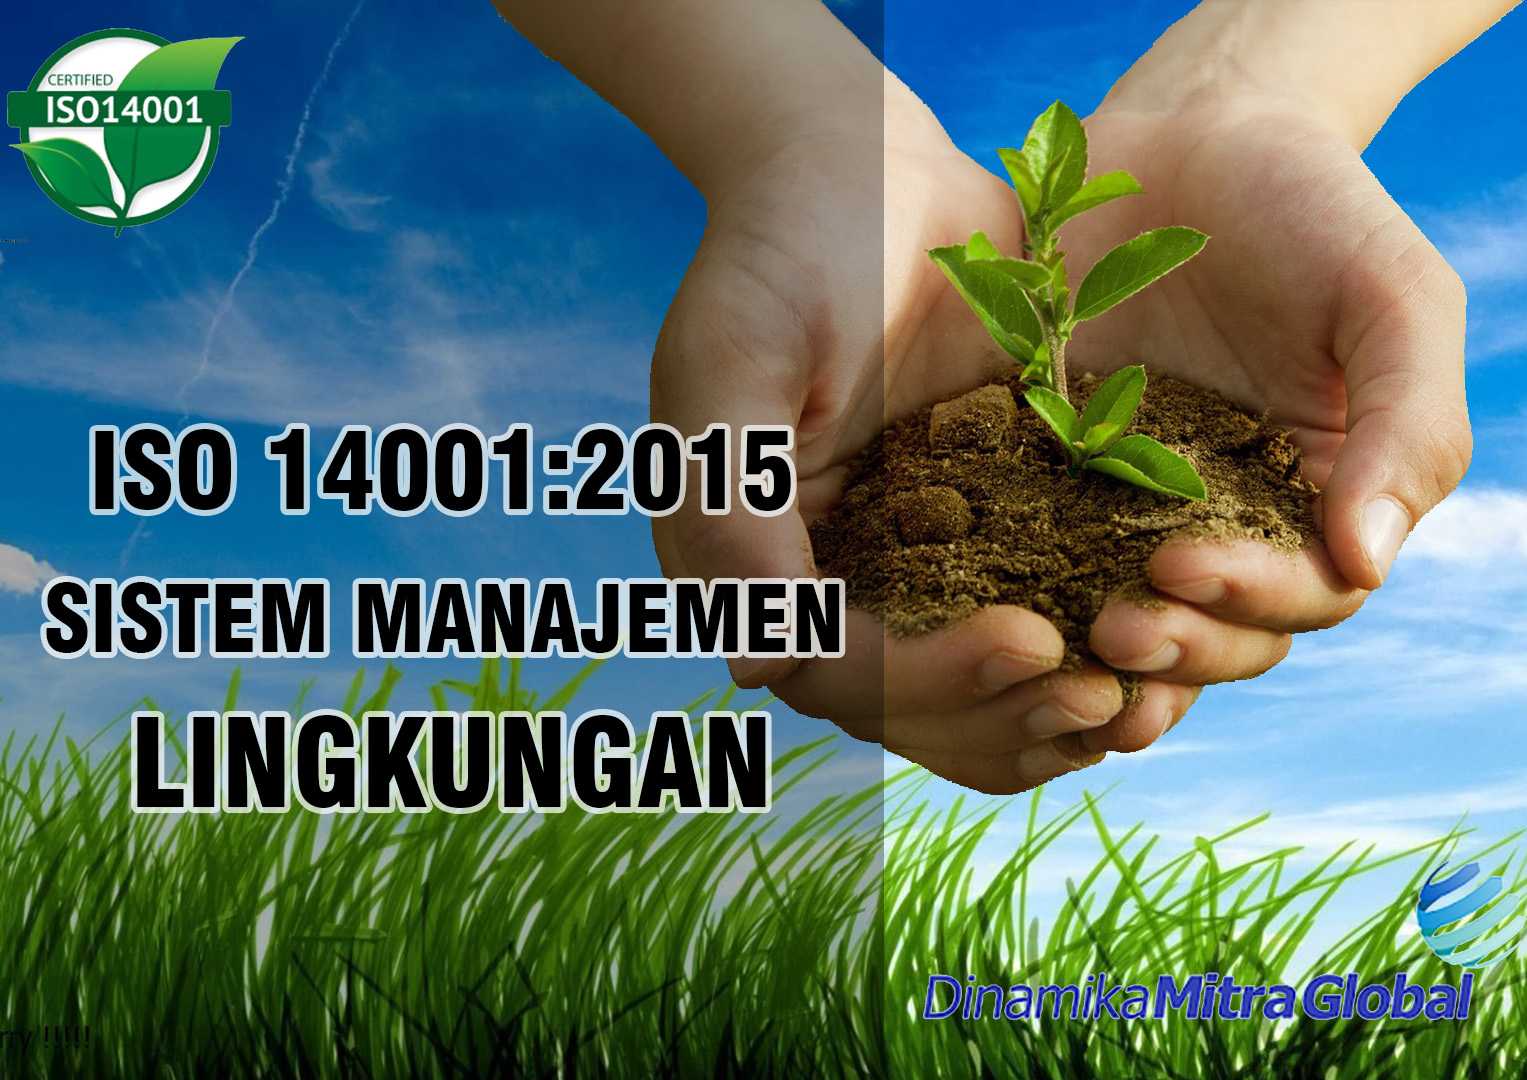 Исо 14001 - стандарт системы экологического менеджмента